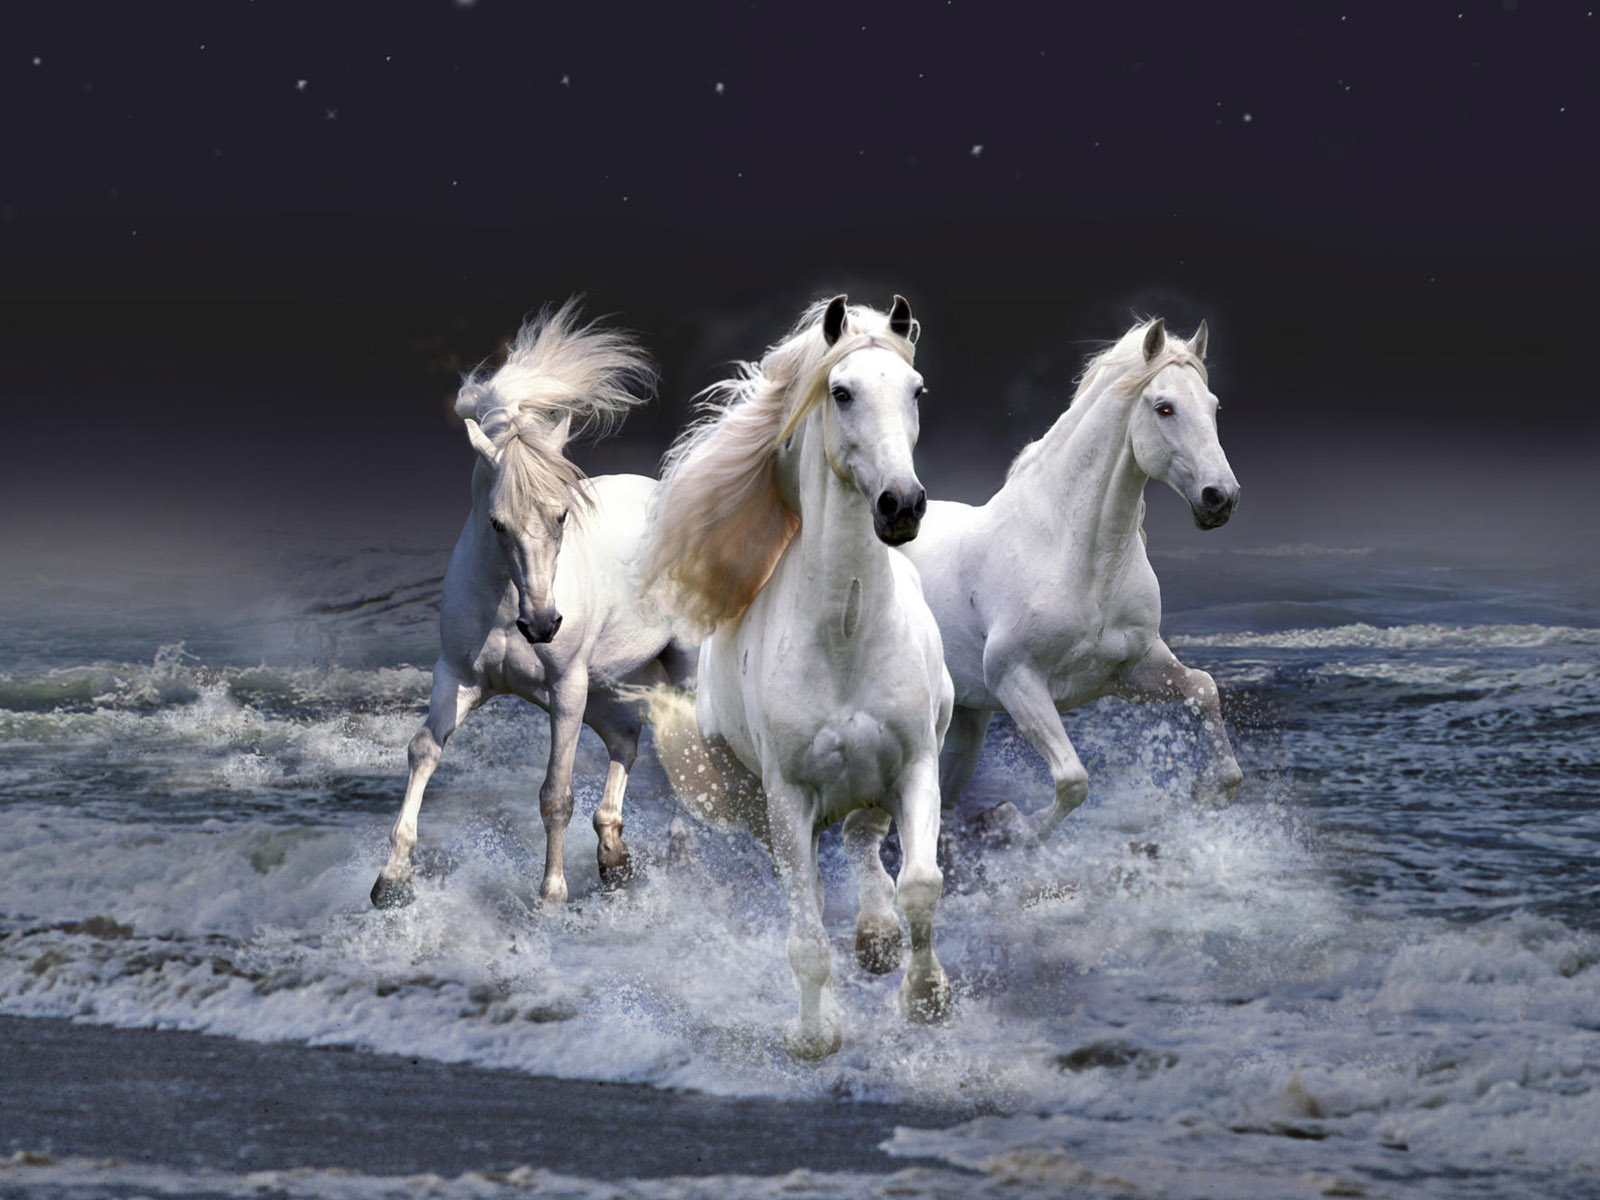 Тройка белых коней